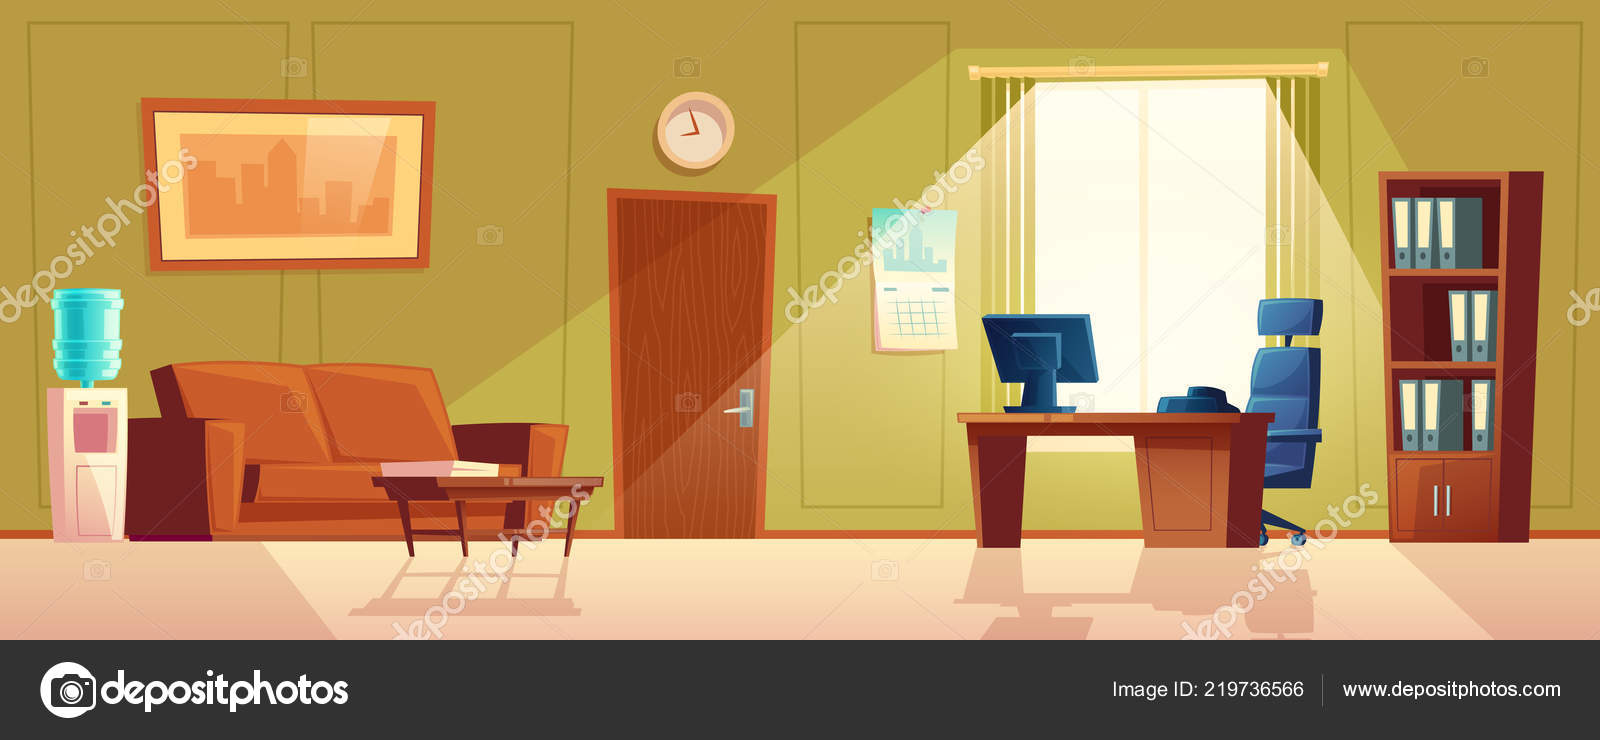 Cartoon empty room Vector Art Stock Images | Depositphotos